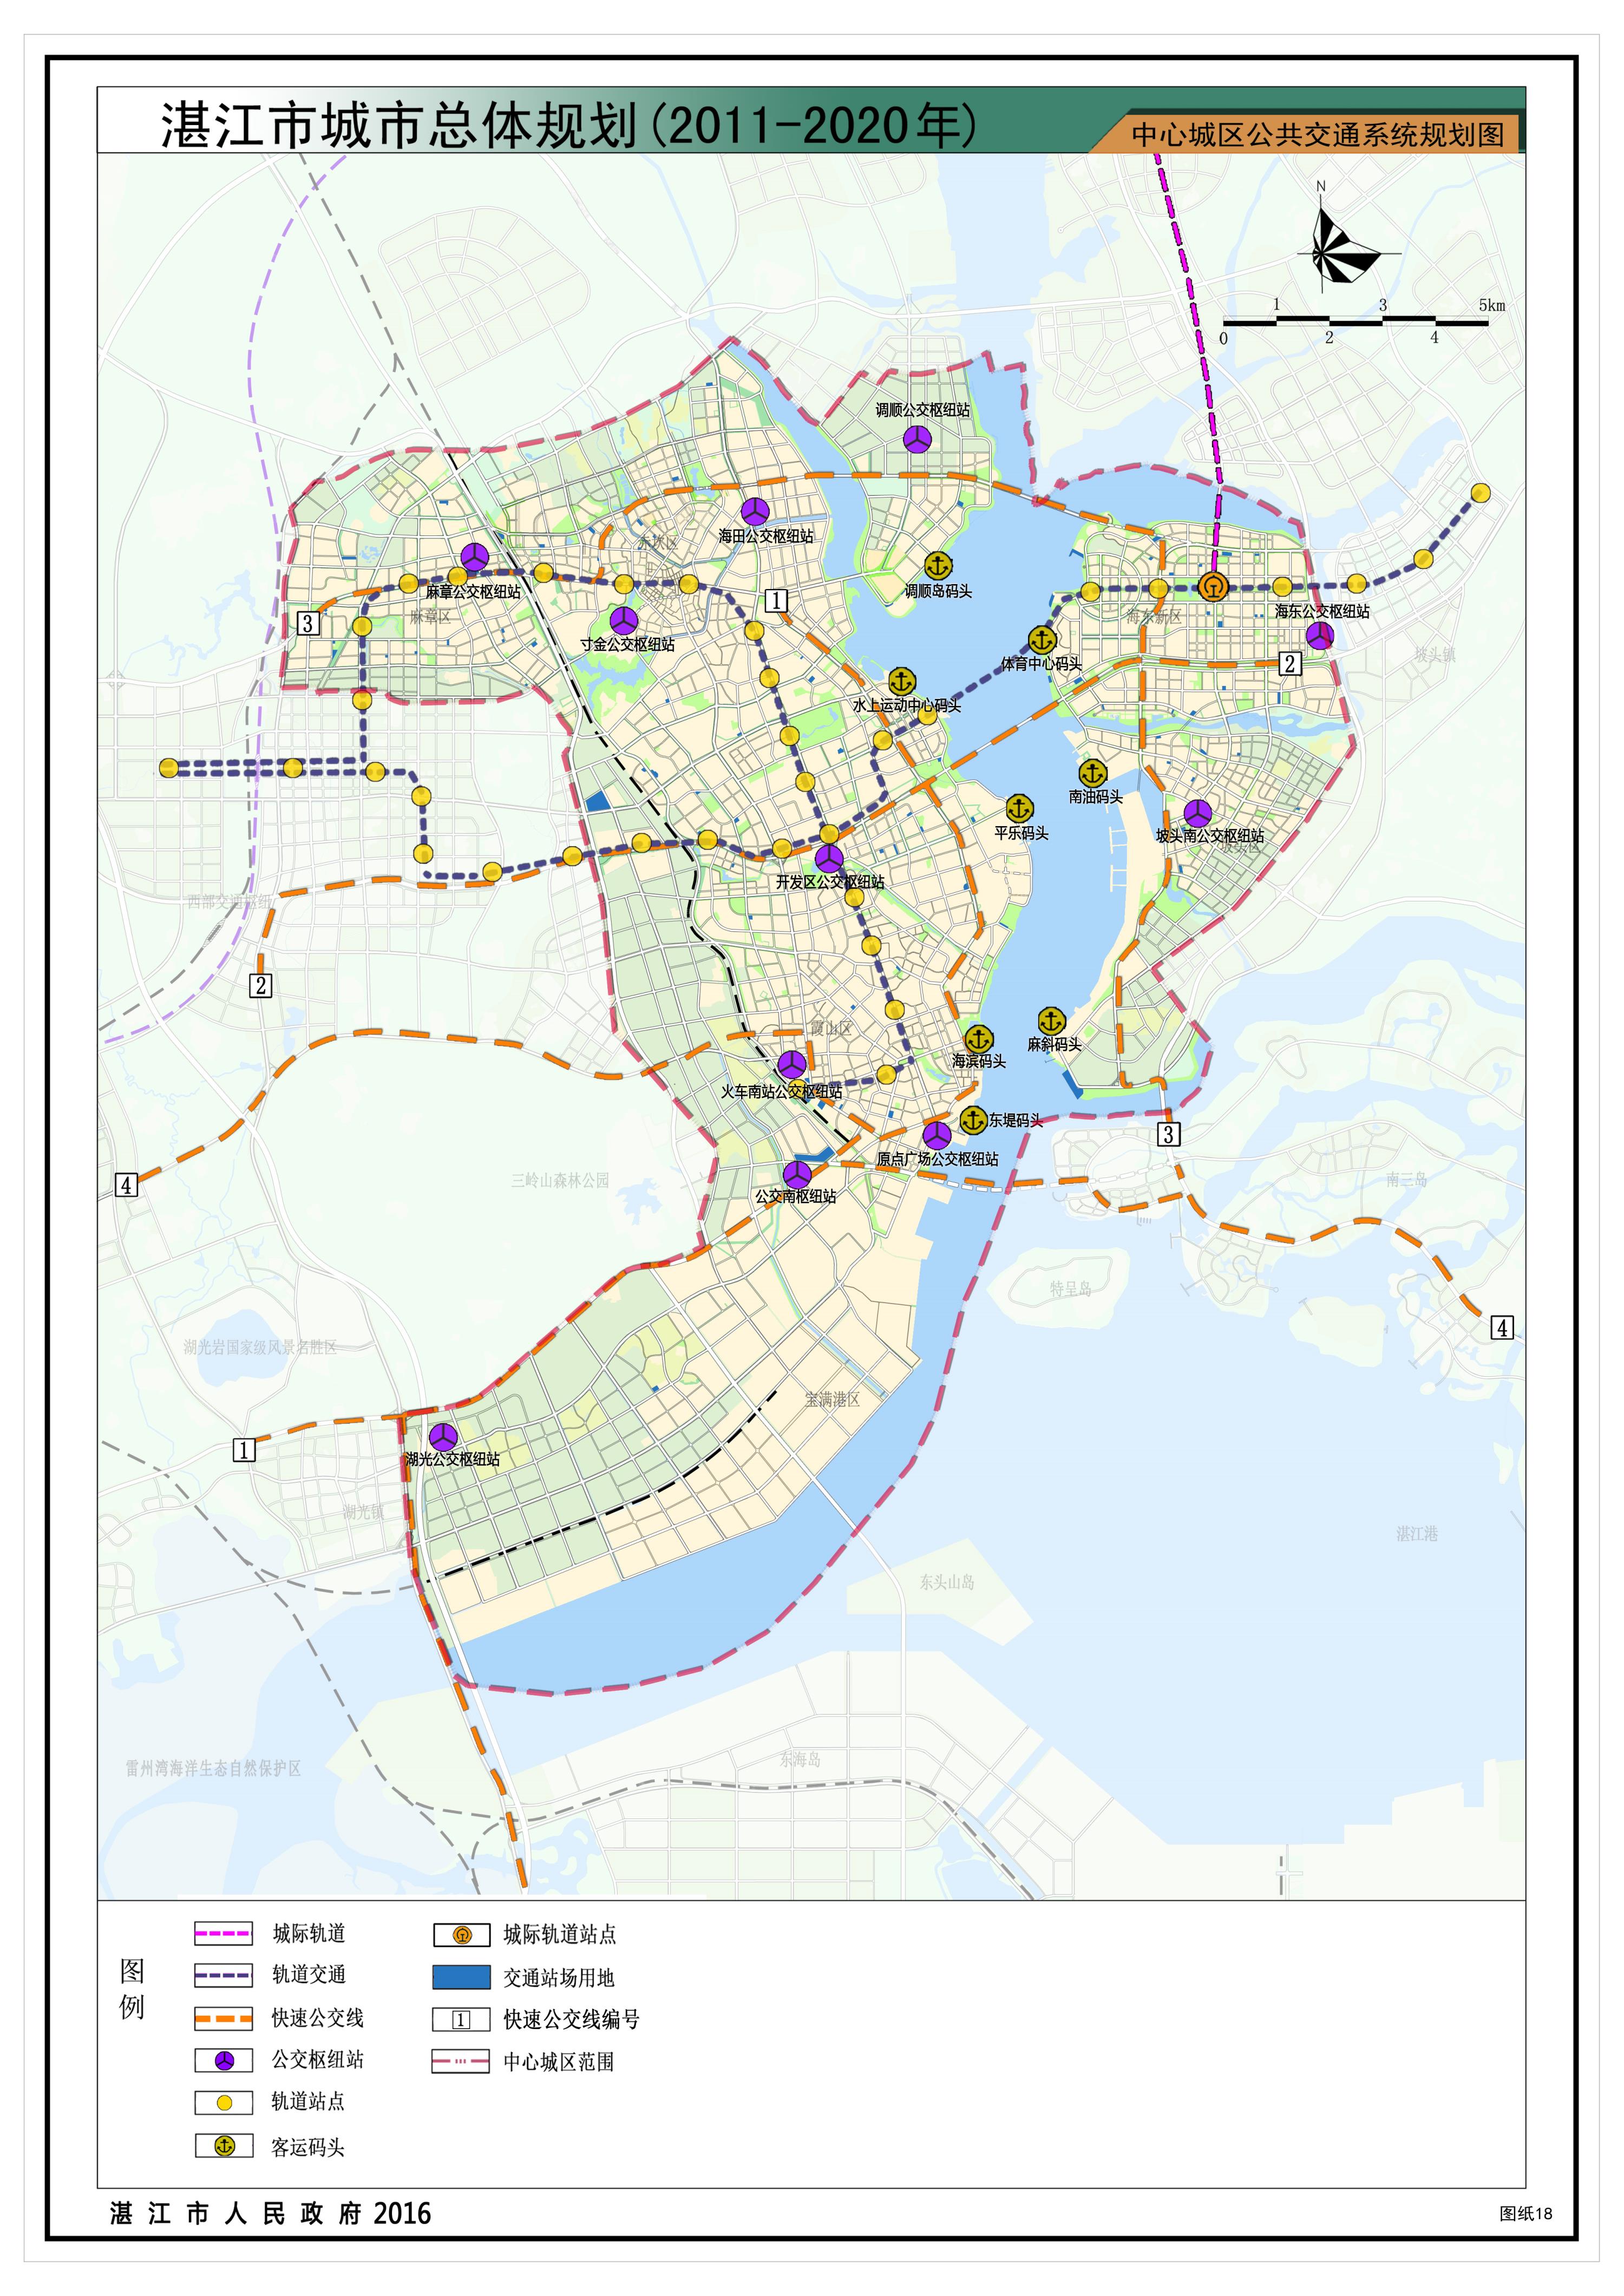 15中心城区公共交通系统规划图.jpg